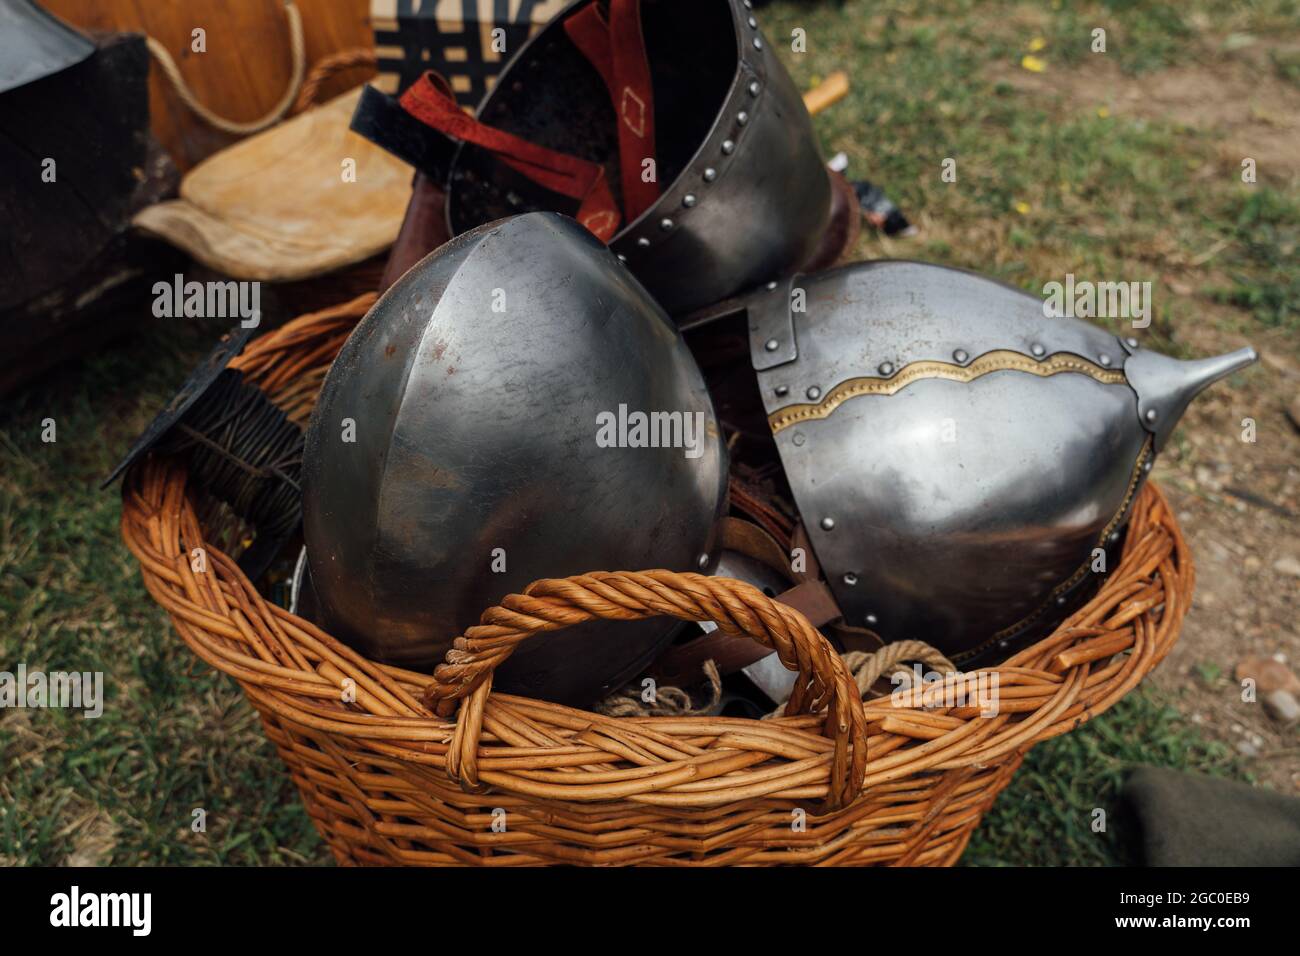 Gros plan de casques en métal anciens de chevalier médiéval dans le panier mis à l'extérieur sur le sol Banque D'Images